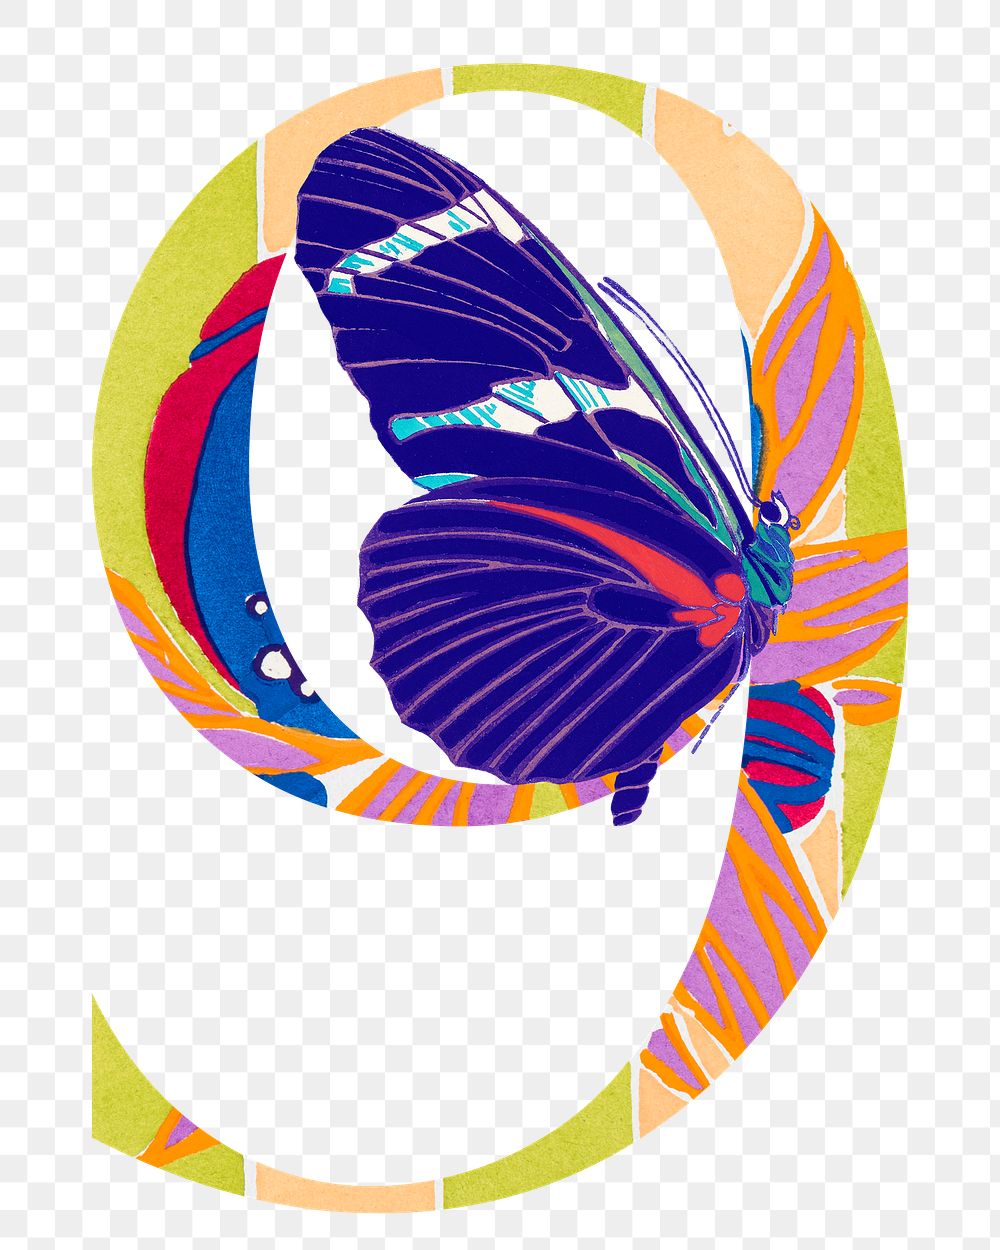 Number 9 png Seguy Papillons art illustration, transparent background